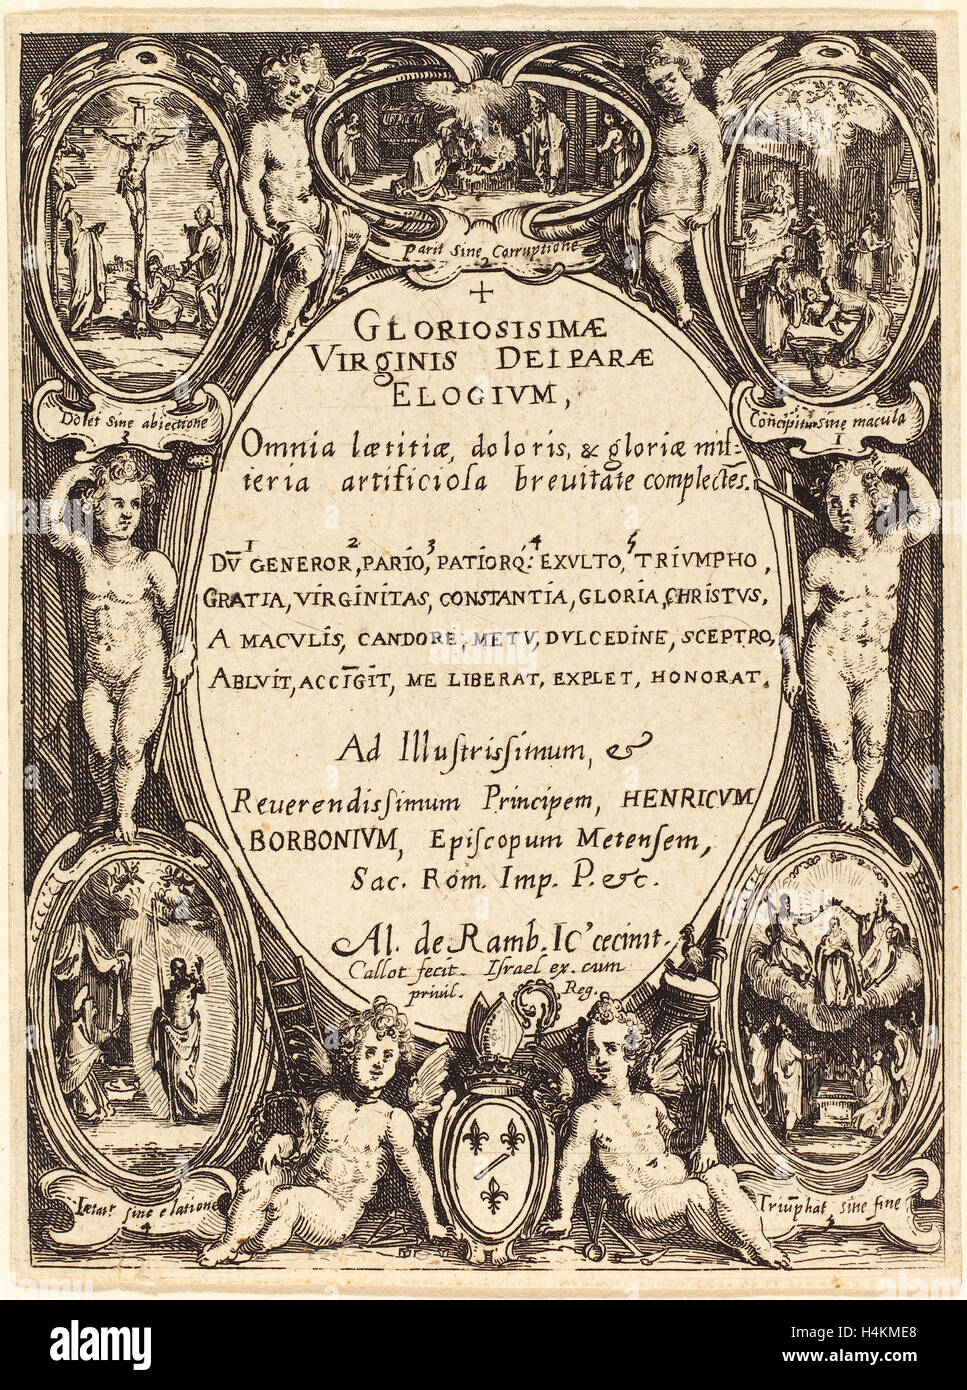 Jacques Callot (francese, 1592 - 1635), frontespizio per 'Gloriosissimae', di attacco Foto Stock